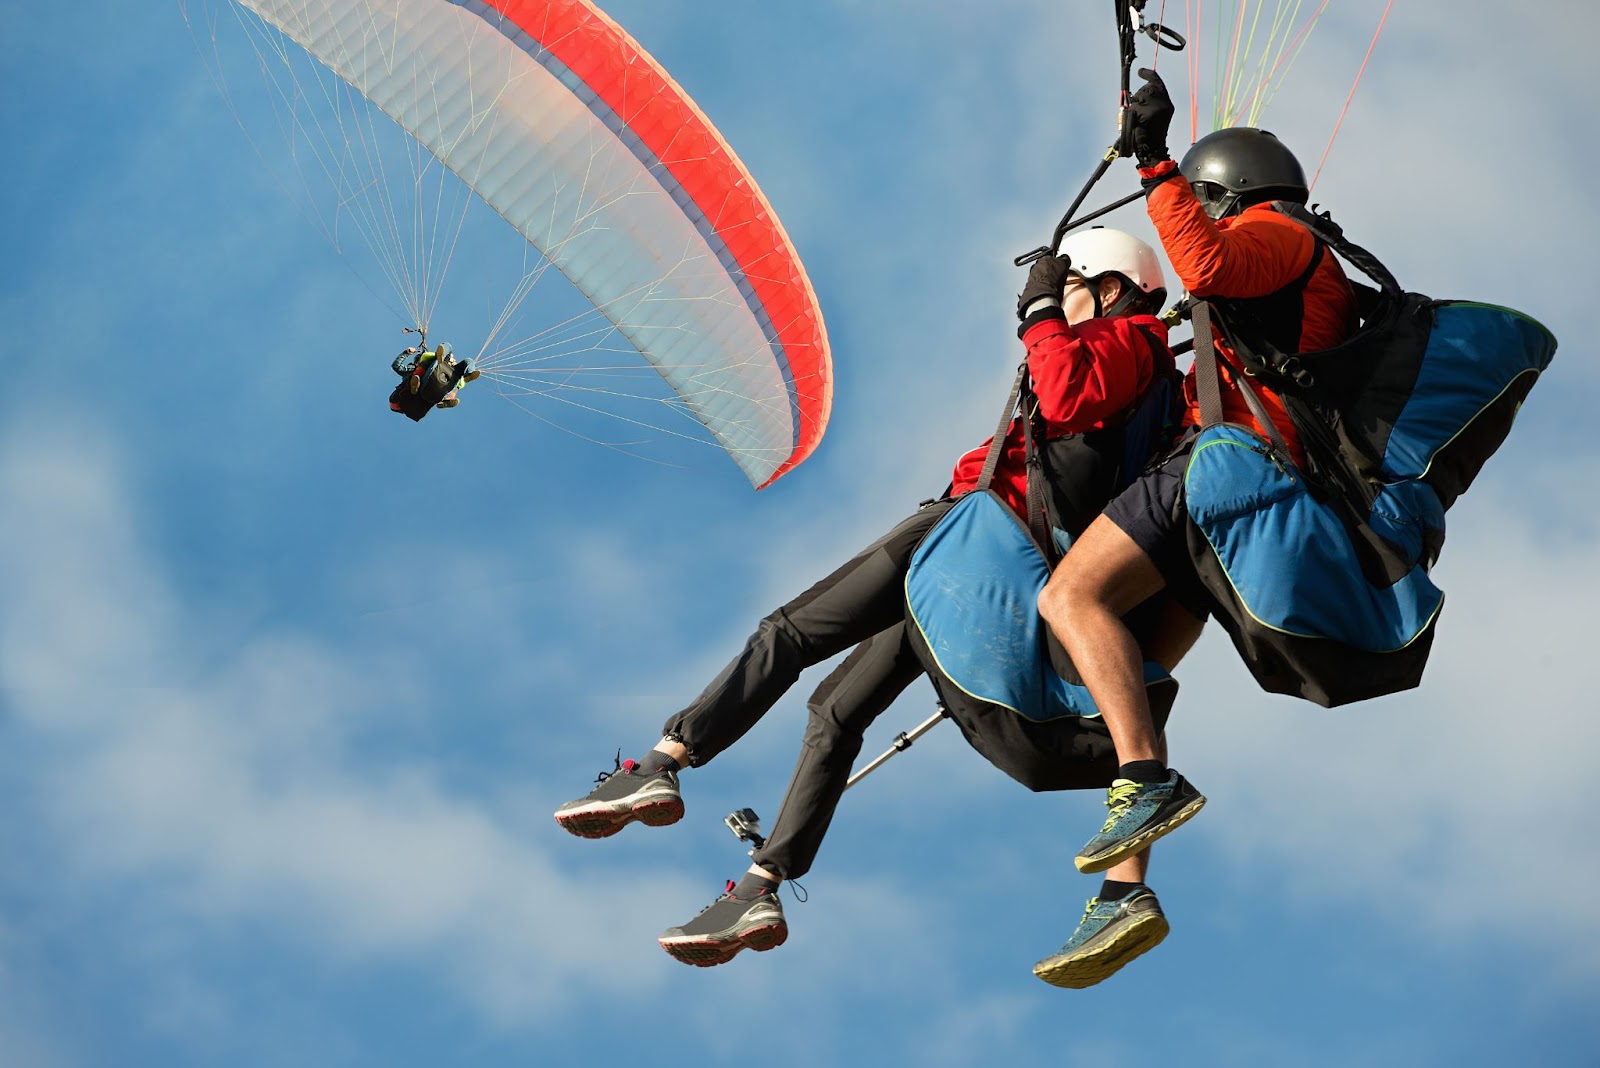 Duas pessoas em foco no ar sobrevoando de parapente. Ao fundo, uma terceira pessoa voando de parapente no céu azul com nuvens brancas.